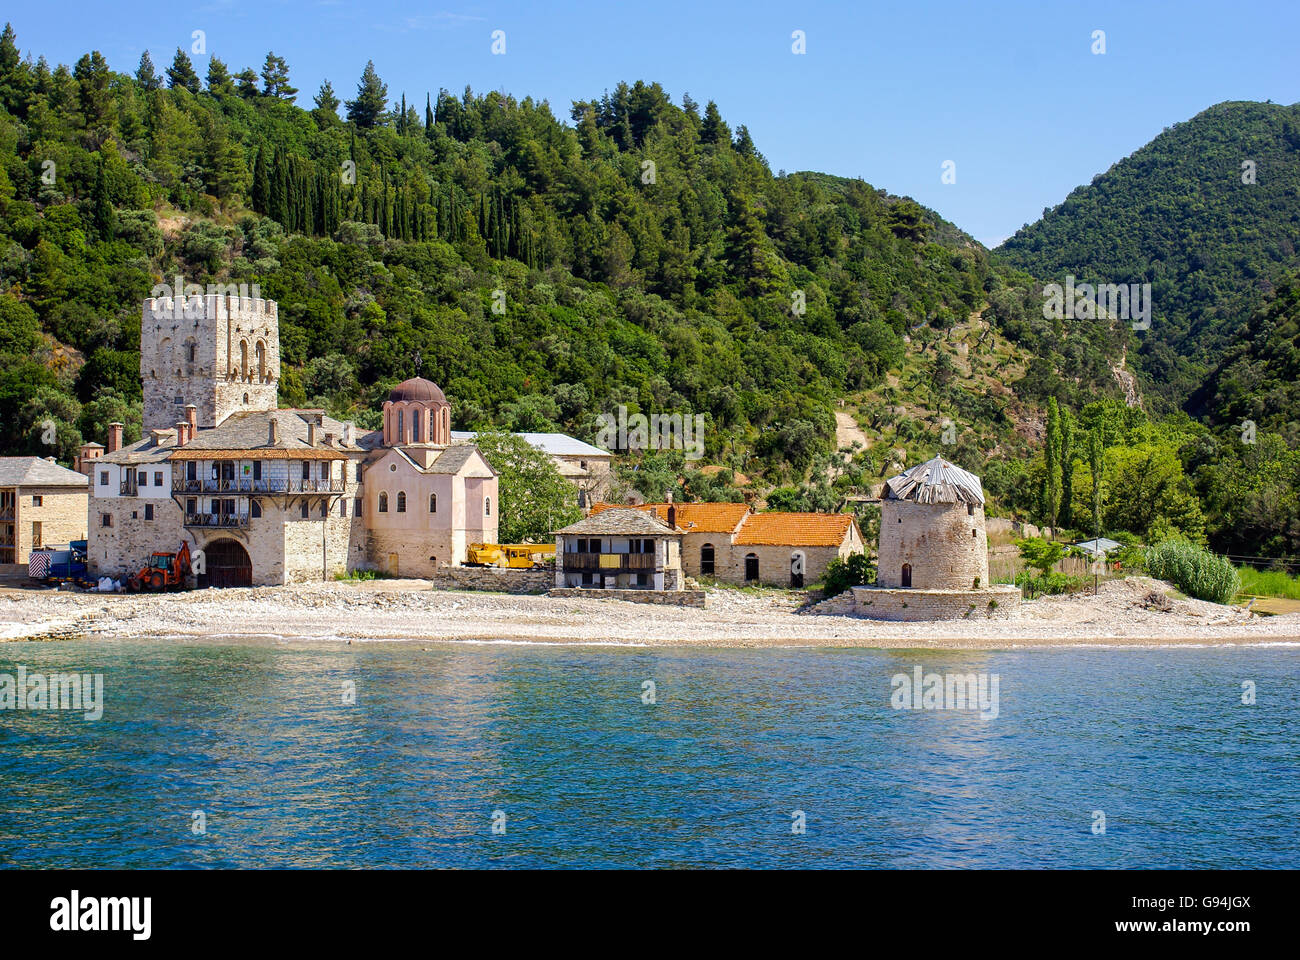 Monastery on Mount Athos, Chalkidiki, Greece Stock Photo